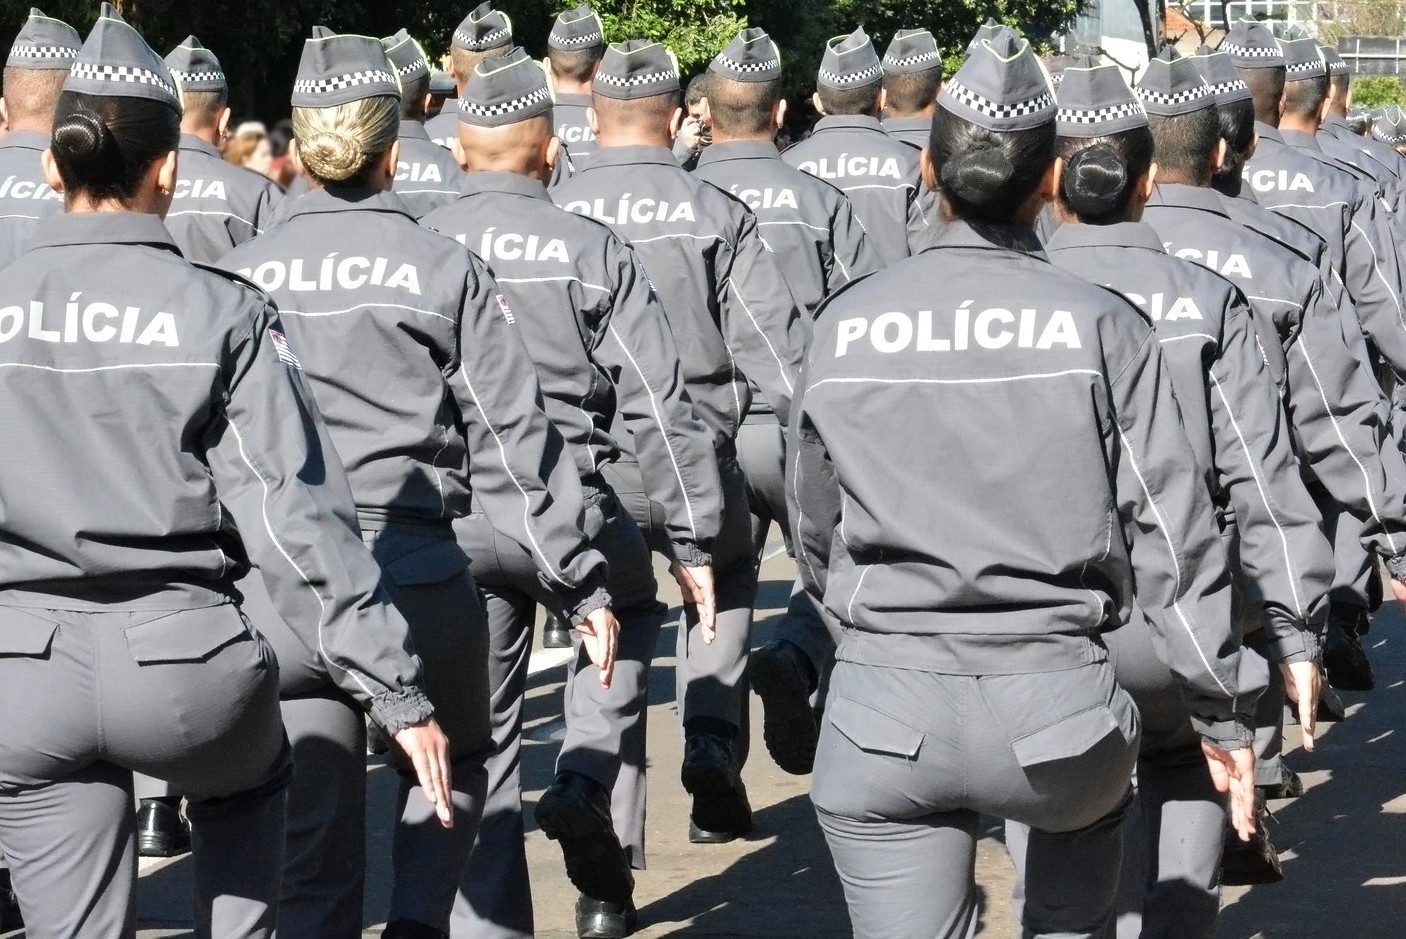 Polícia Militar abre inscrições para concurso de aluno-oficial; haverá provas em Presidente Prudente thumbnail